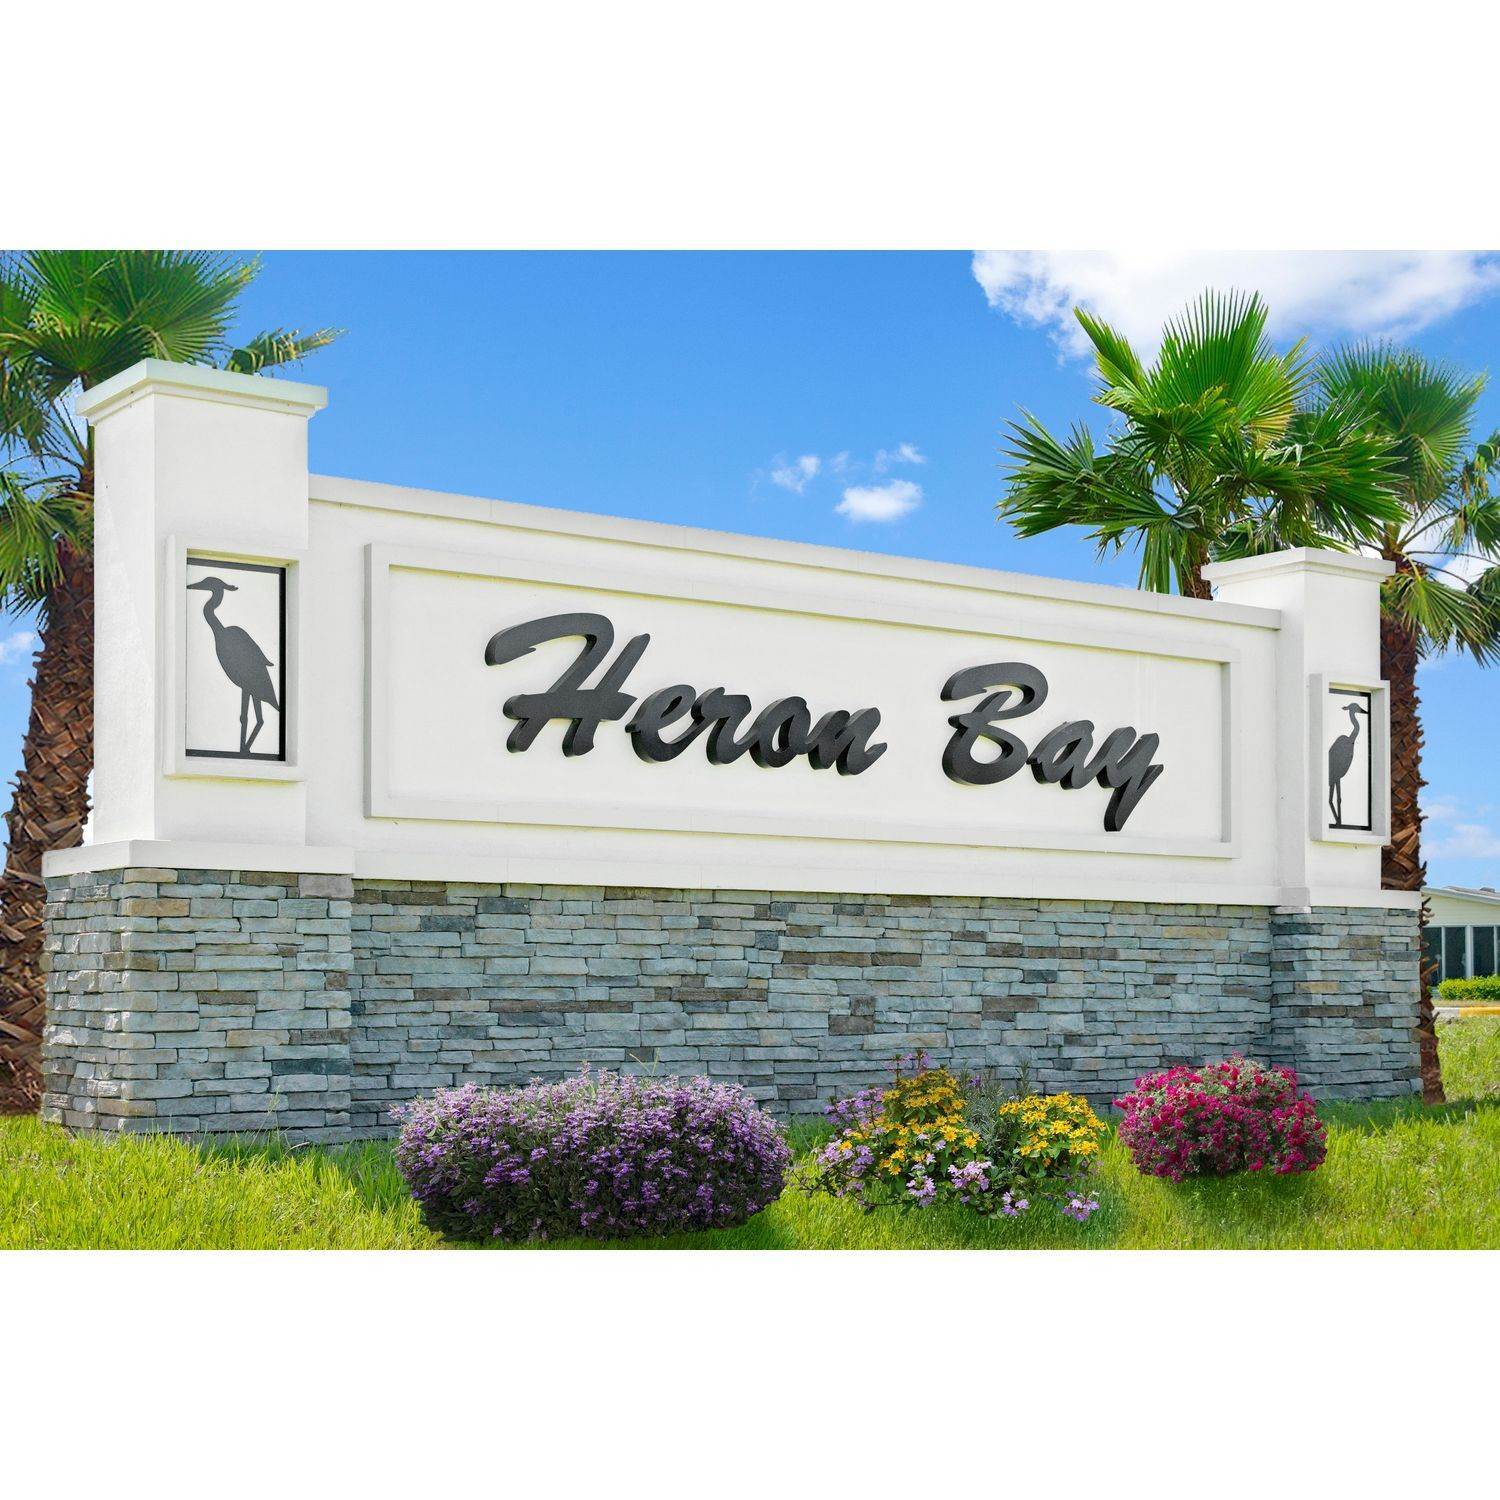 Heron Bay edificio en 2879 89th St. Cir. E., Palmetto, FL 34221